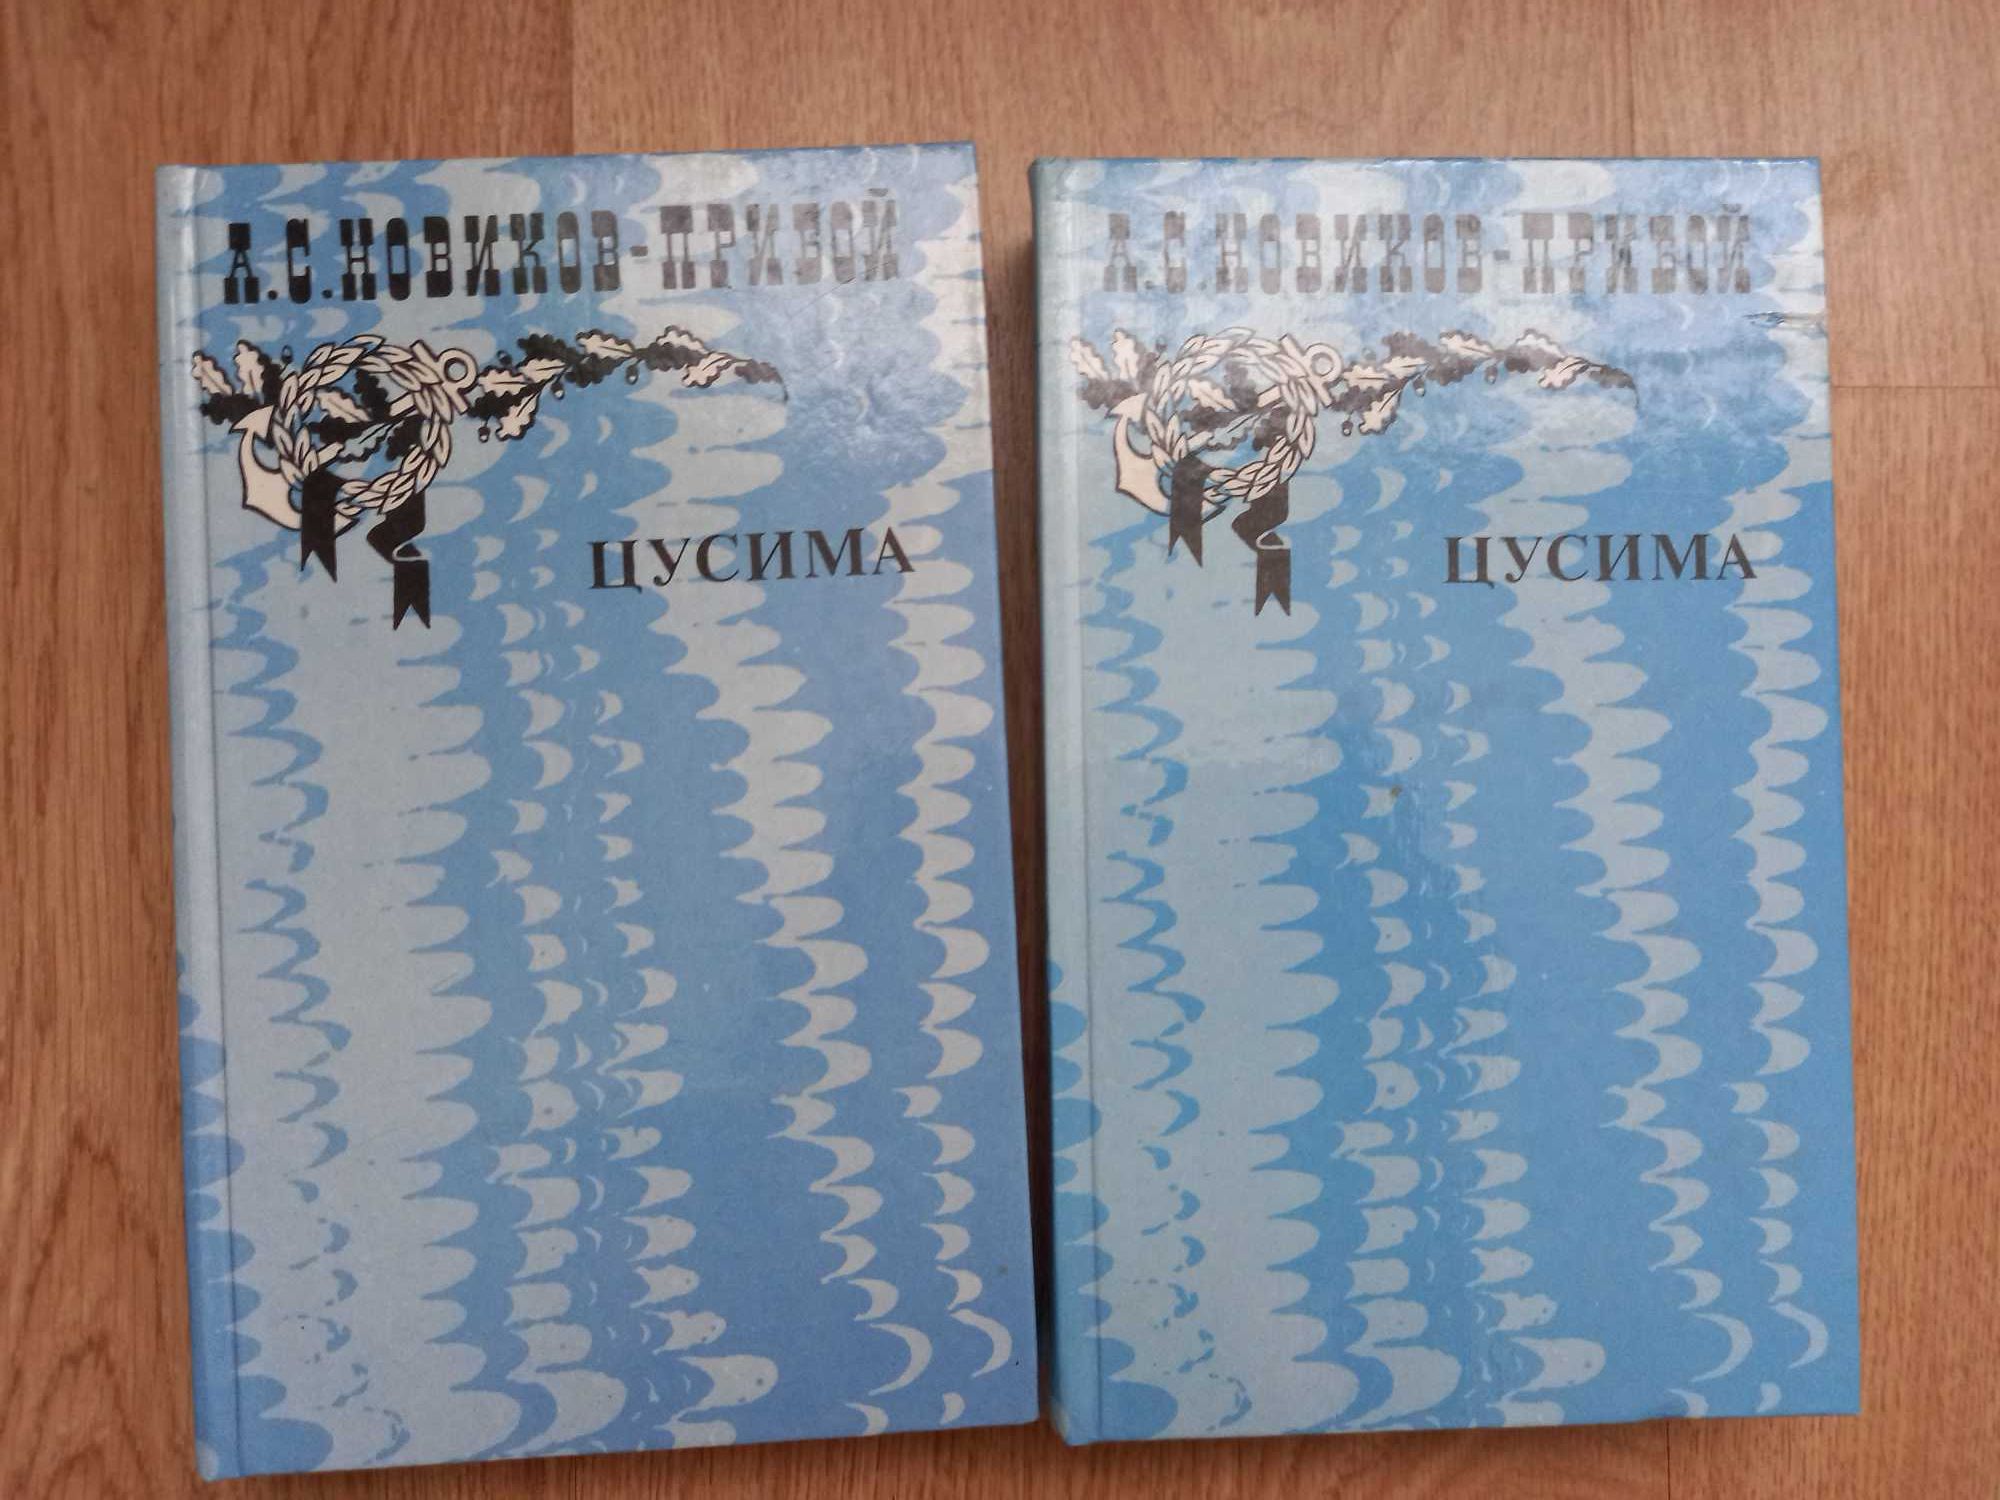 Новиков-Прибой" Цусима" 2 тома